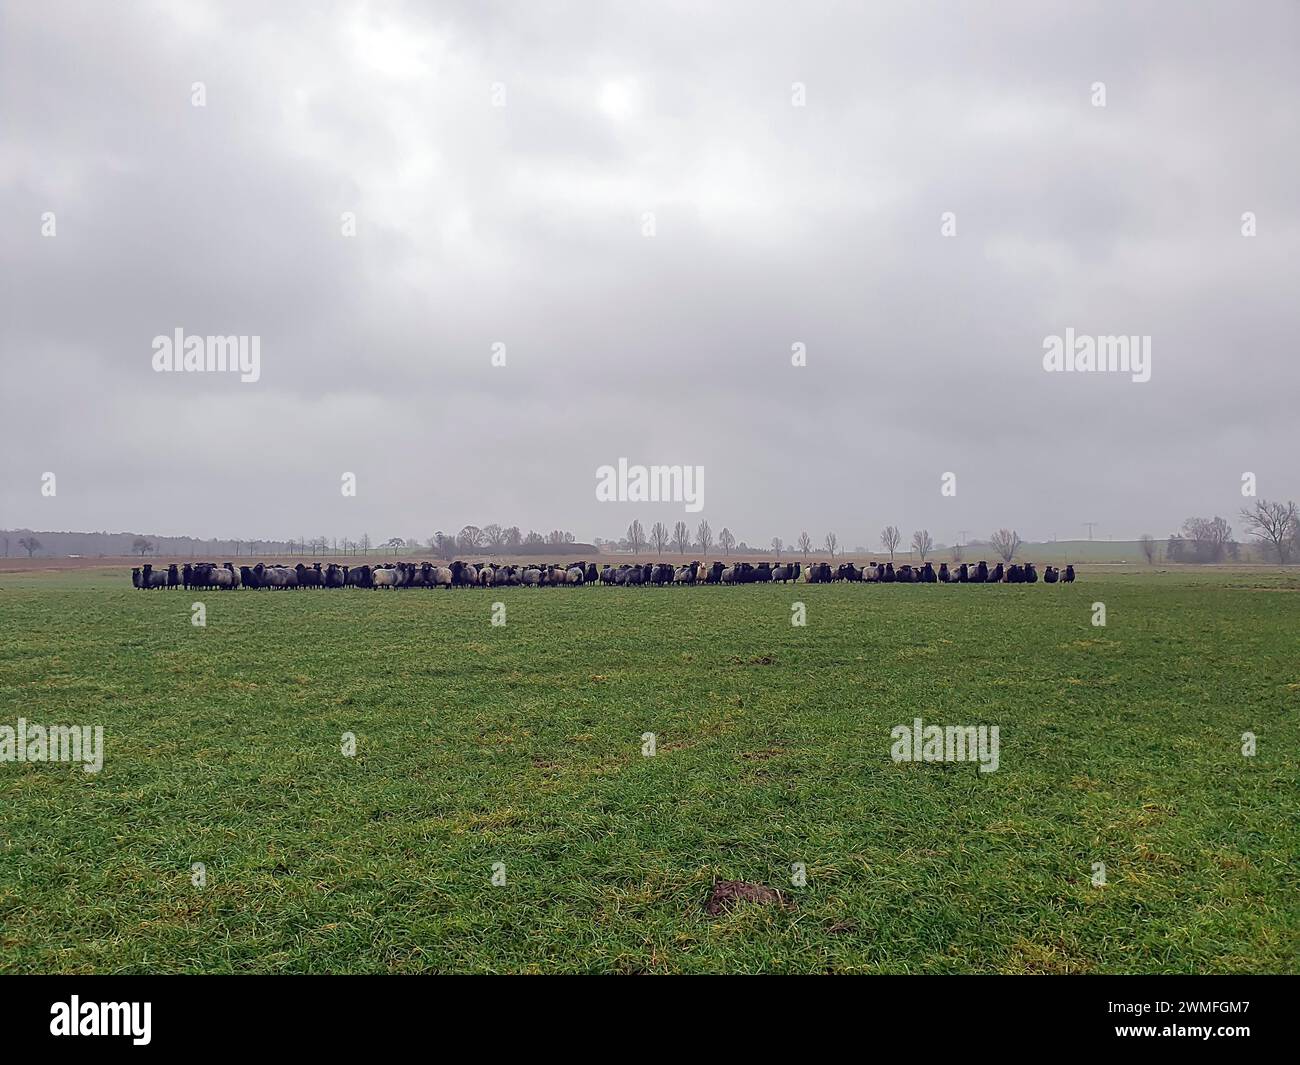 Pecore dalla testa nera al pascolo, Meclemburgo-Pomerania occidentale, Germania Foto Stock